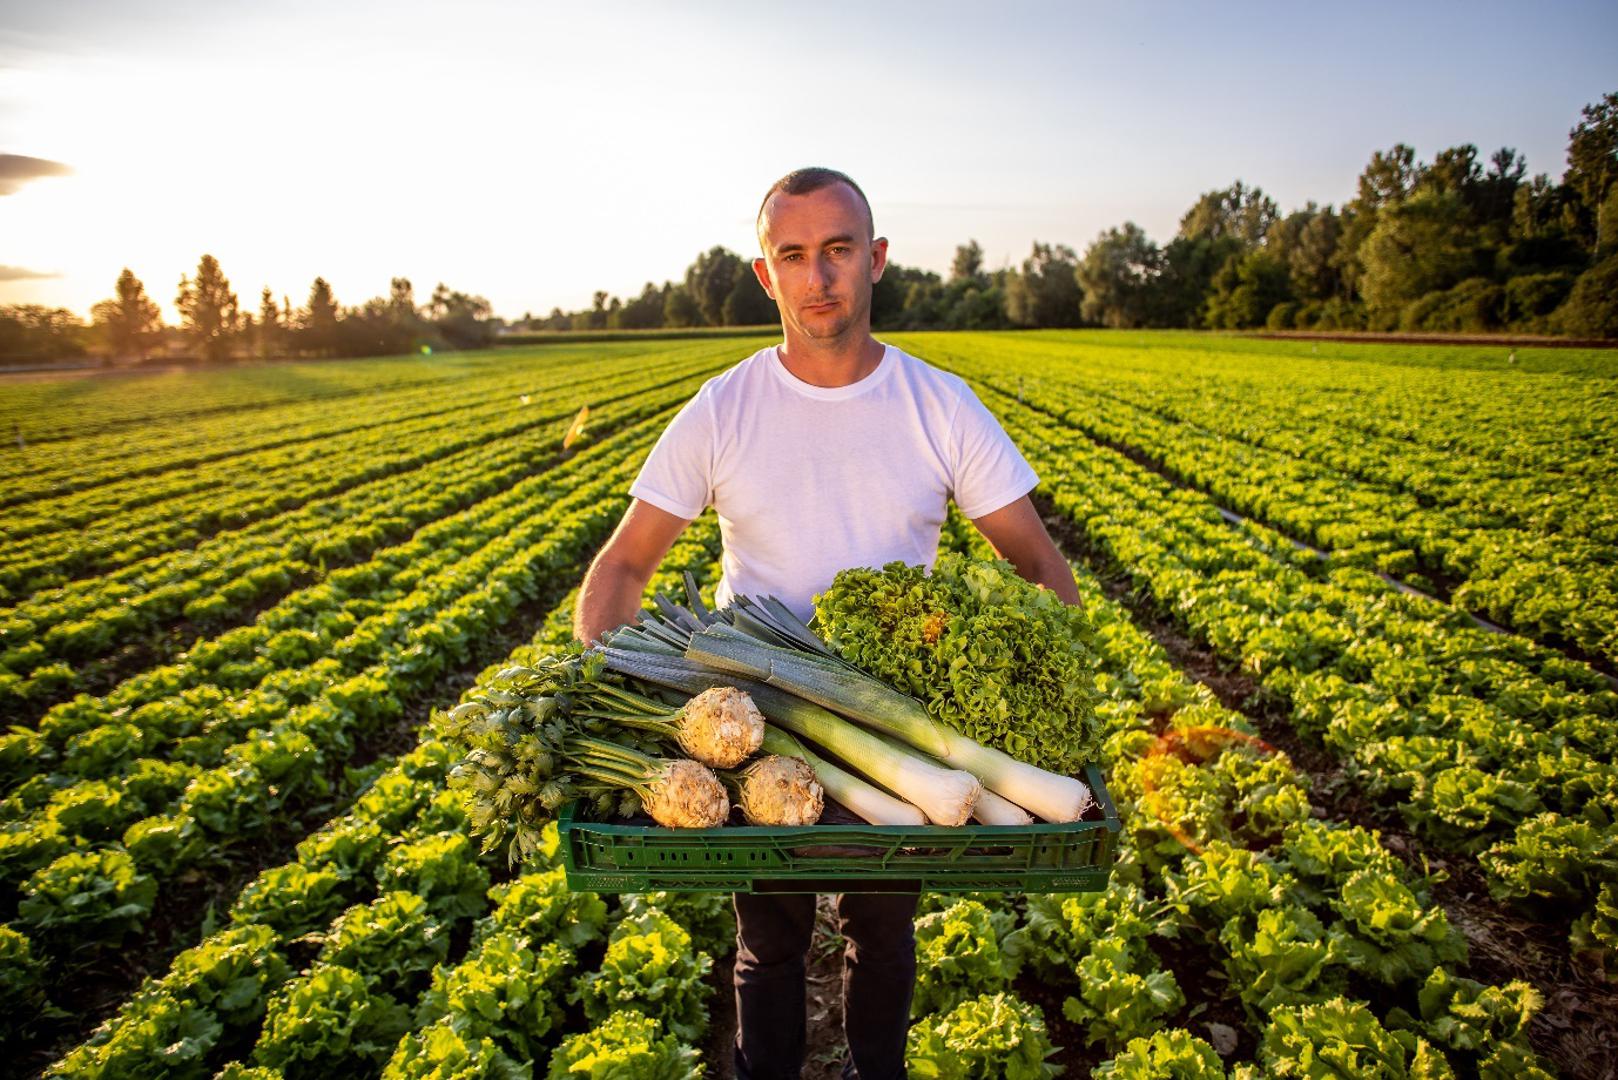 Poljoprivredni obrt Agrosan danas je jedan od najvećih proizvođača povrća u zemlji